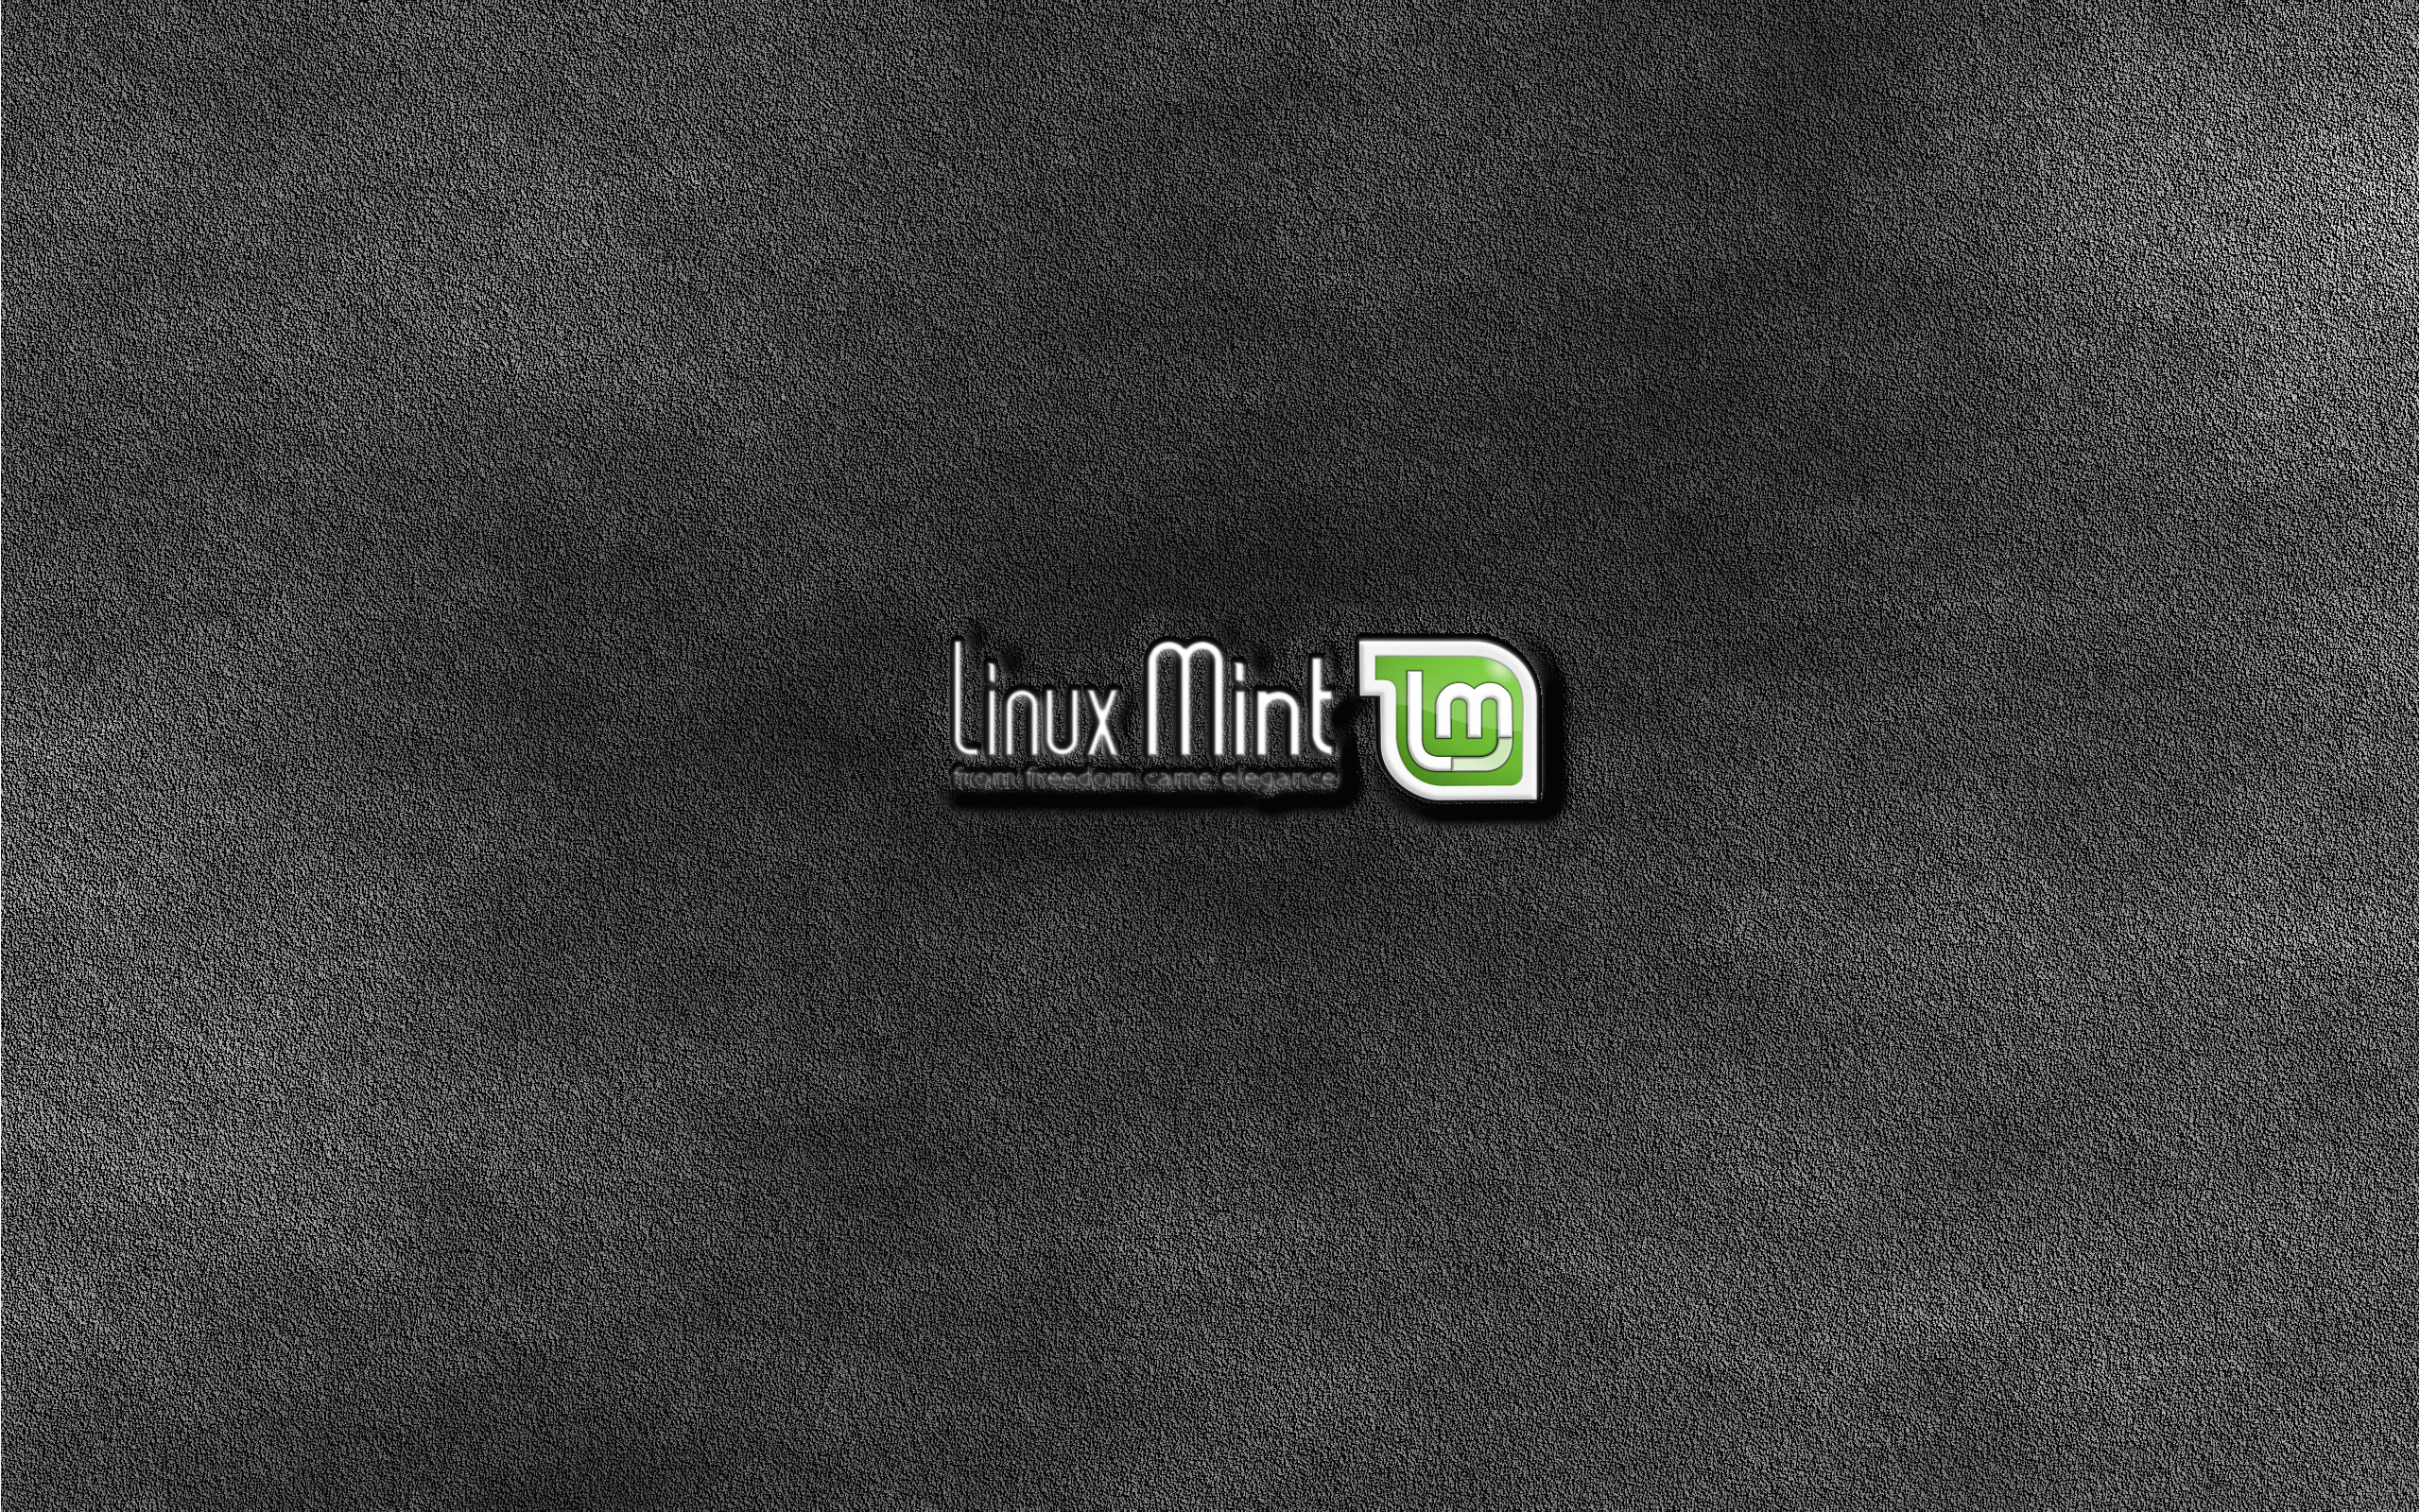 Nuevo fondo de pantalla! Menta tallada en piedra o algo así! ;-) - Linux Mint